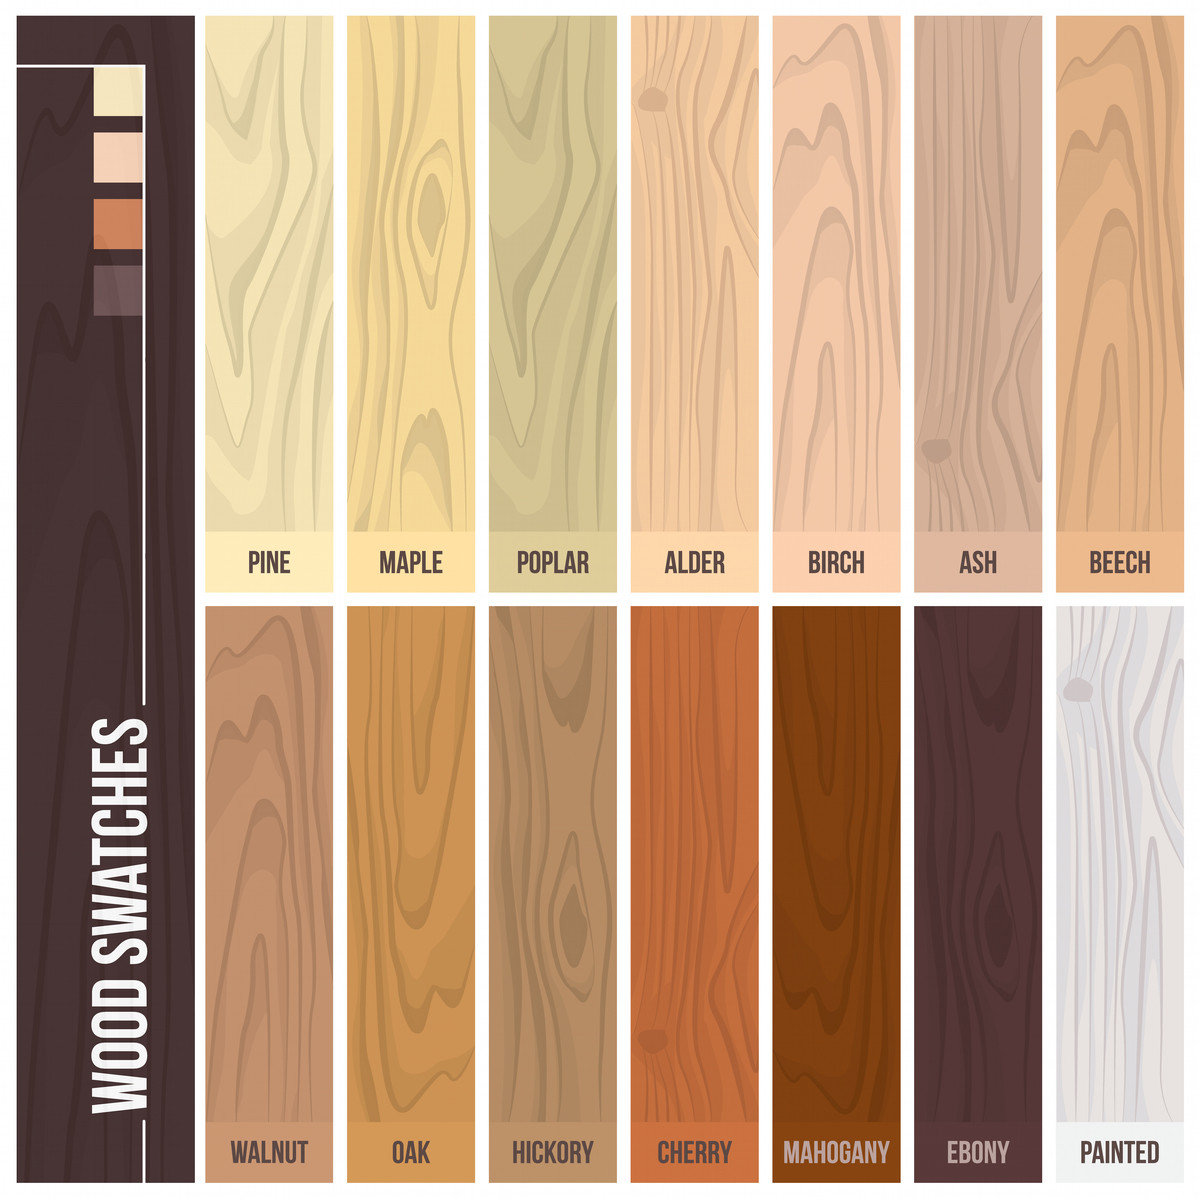 dark white oak hardwood floors of 12 types of hardwood flooring species styles edging dimensions within types of hardwood flooring illustrated guide